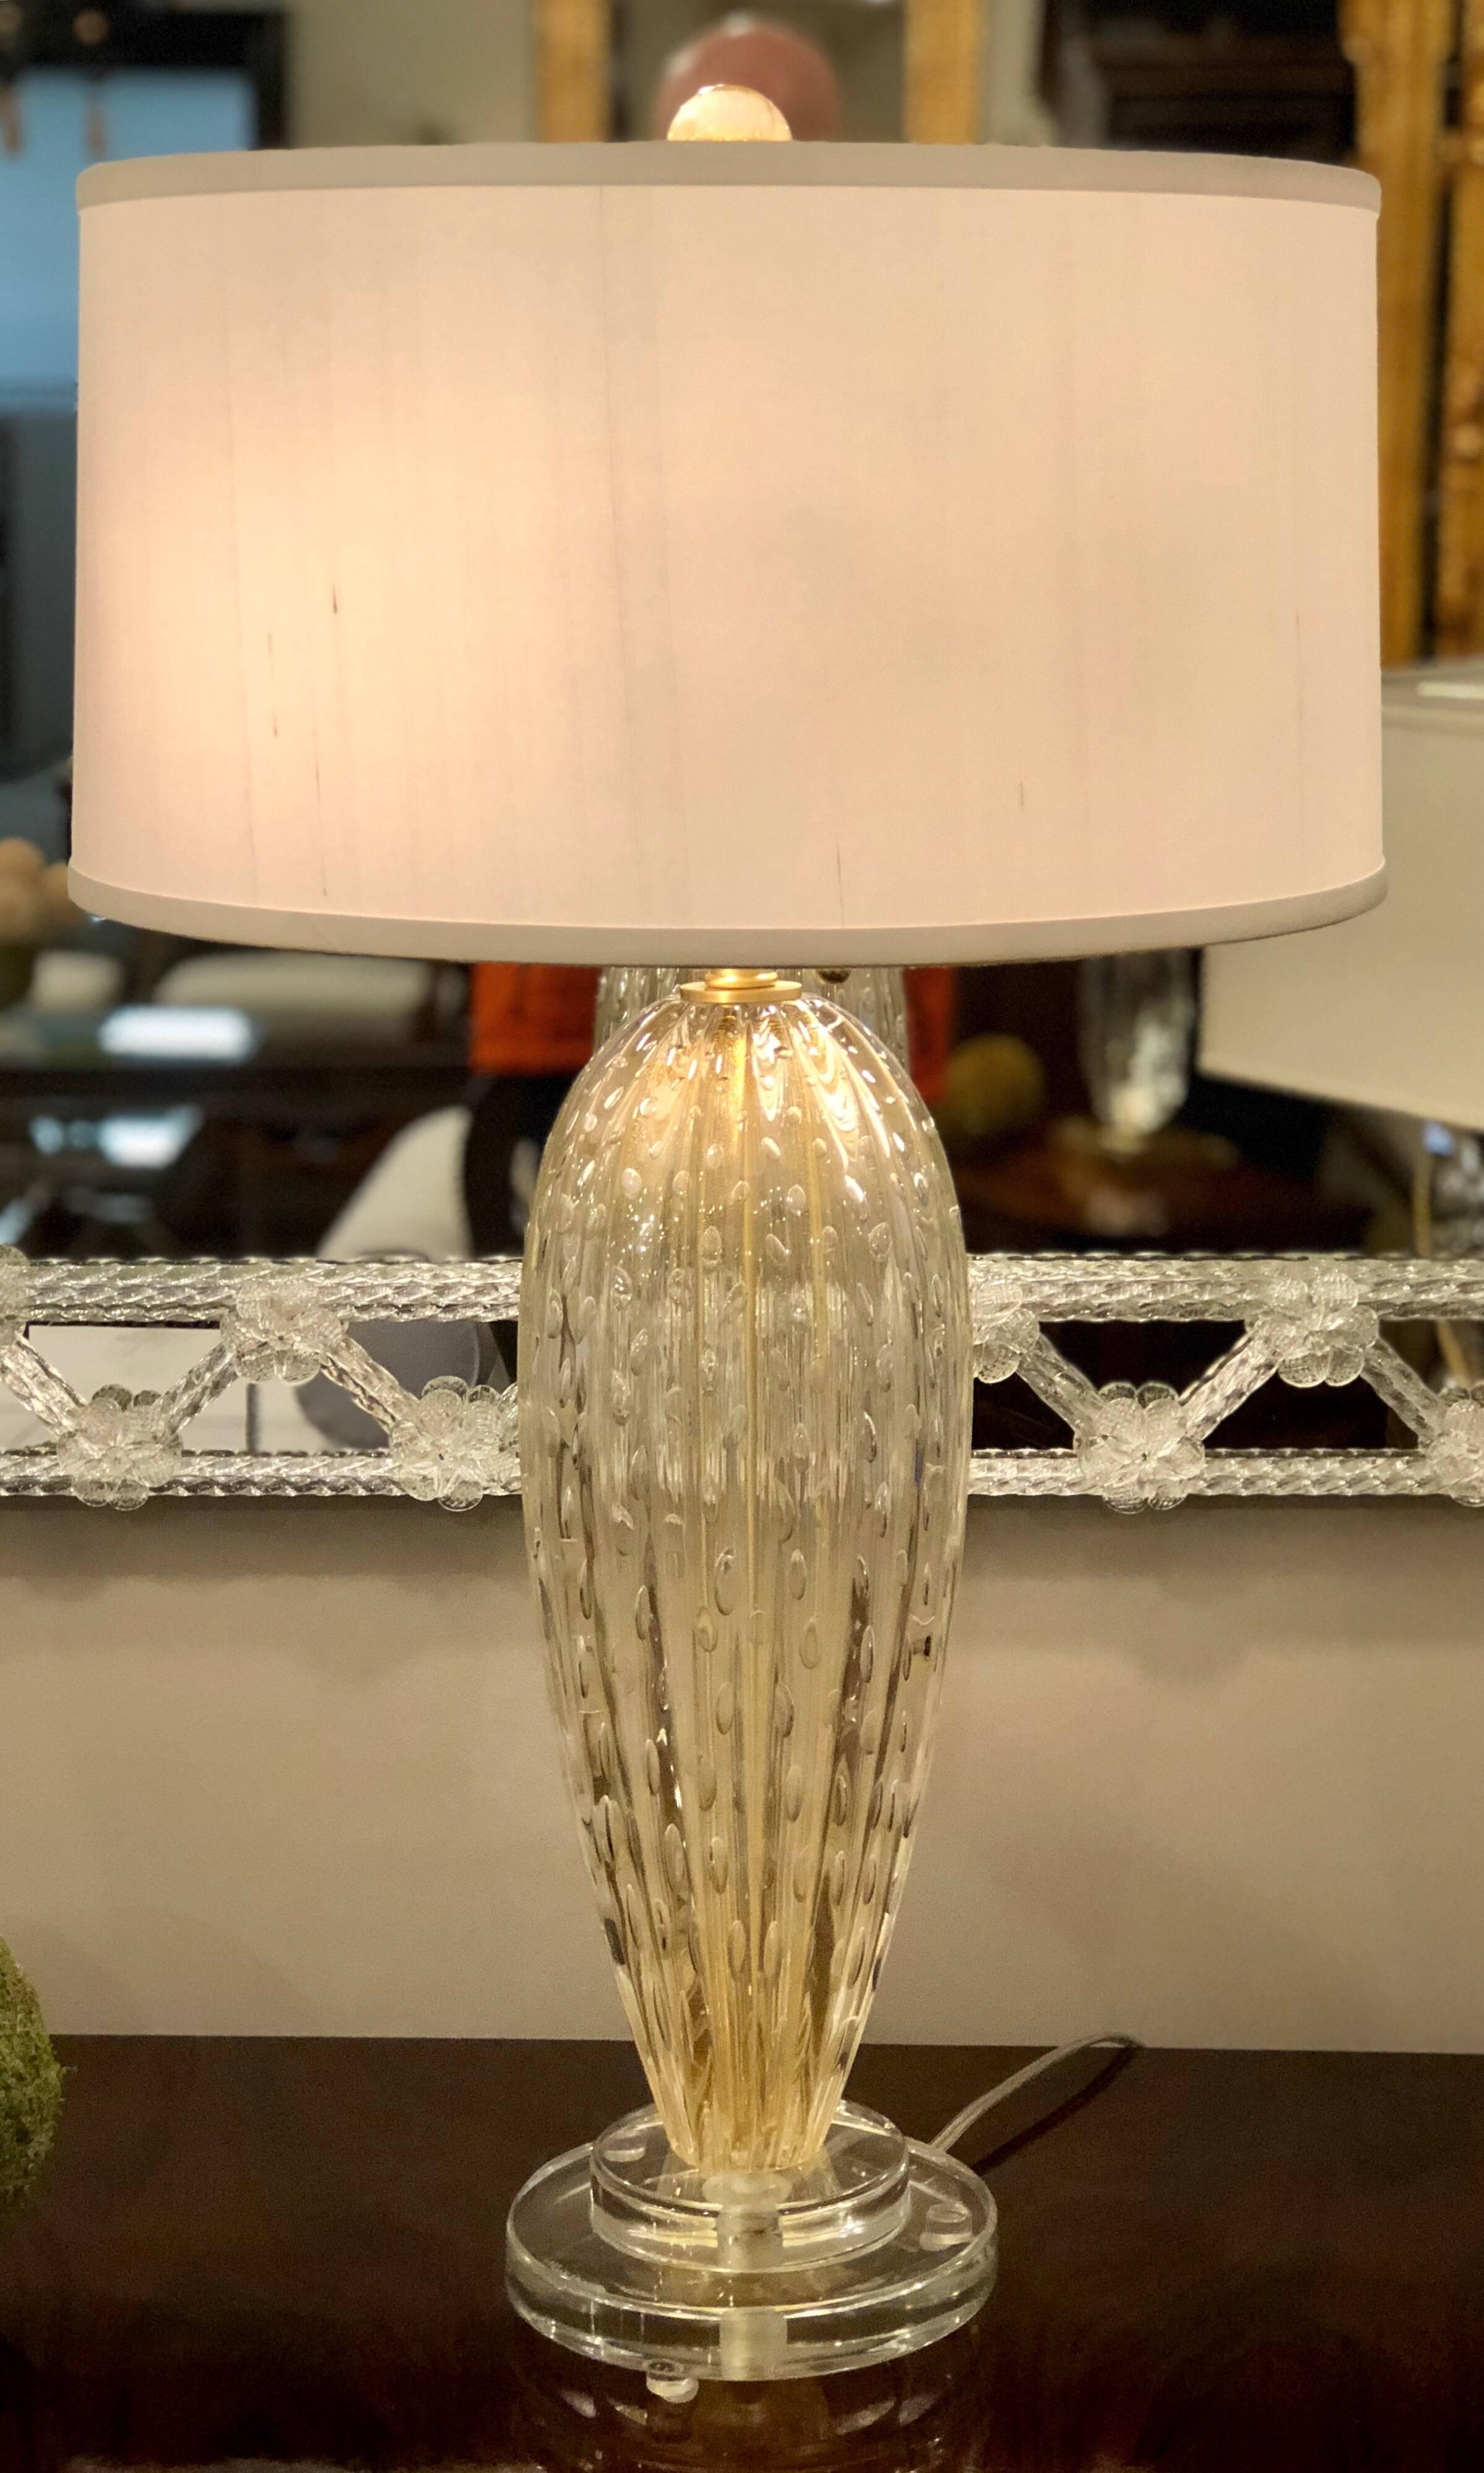 Elégante paire de lampes de table italiennes en verre Murano / vénitien transparent et doré, de style moderne du milieu du siècle.

Les pièces sont formées à l'aide de la technique de verre à bulles de Murano, le 